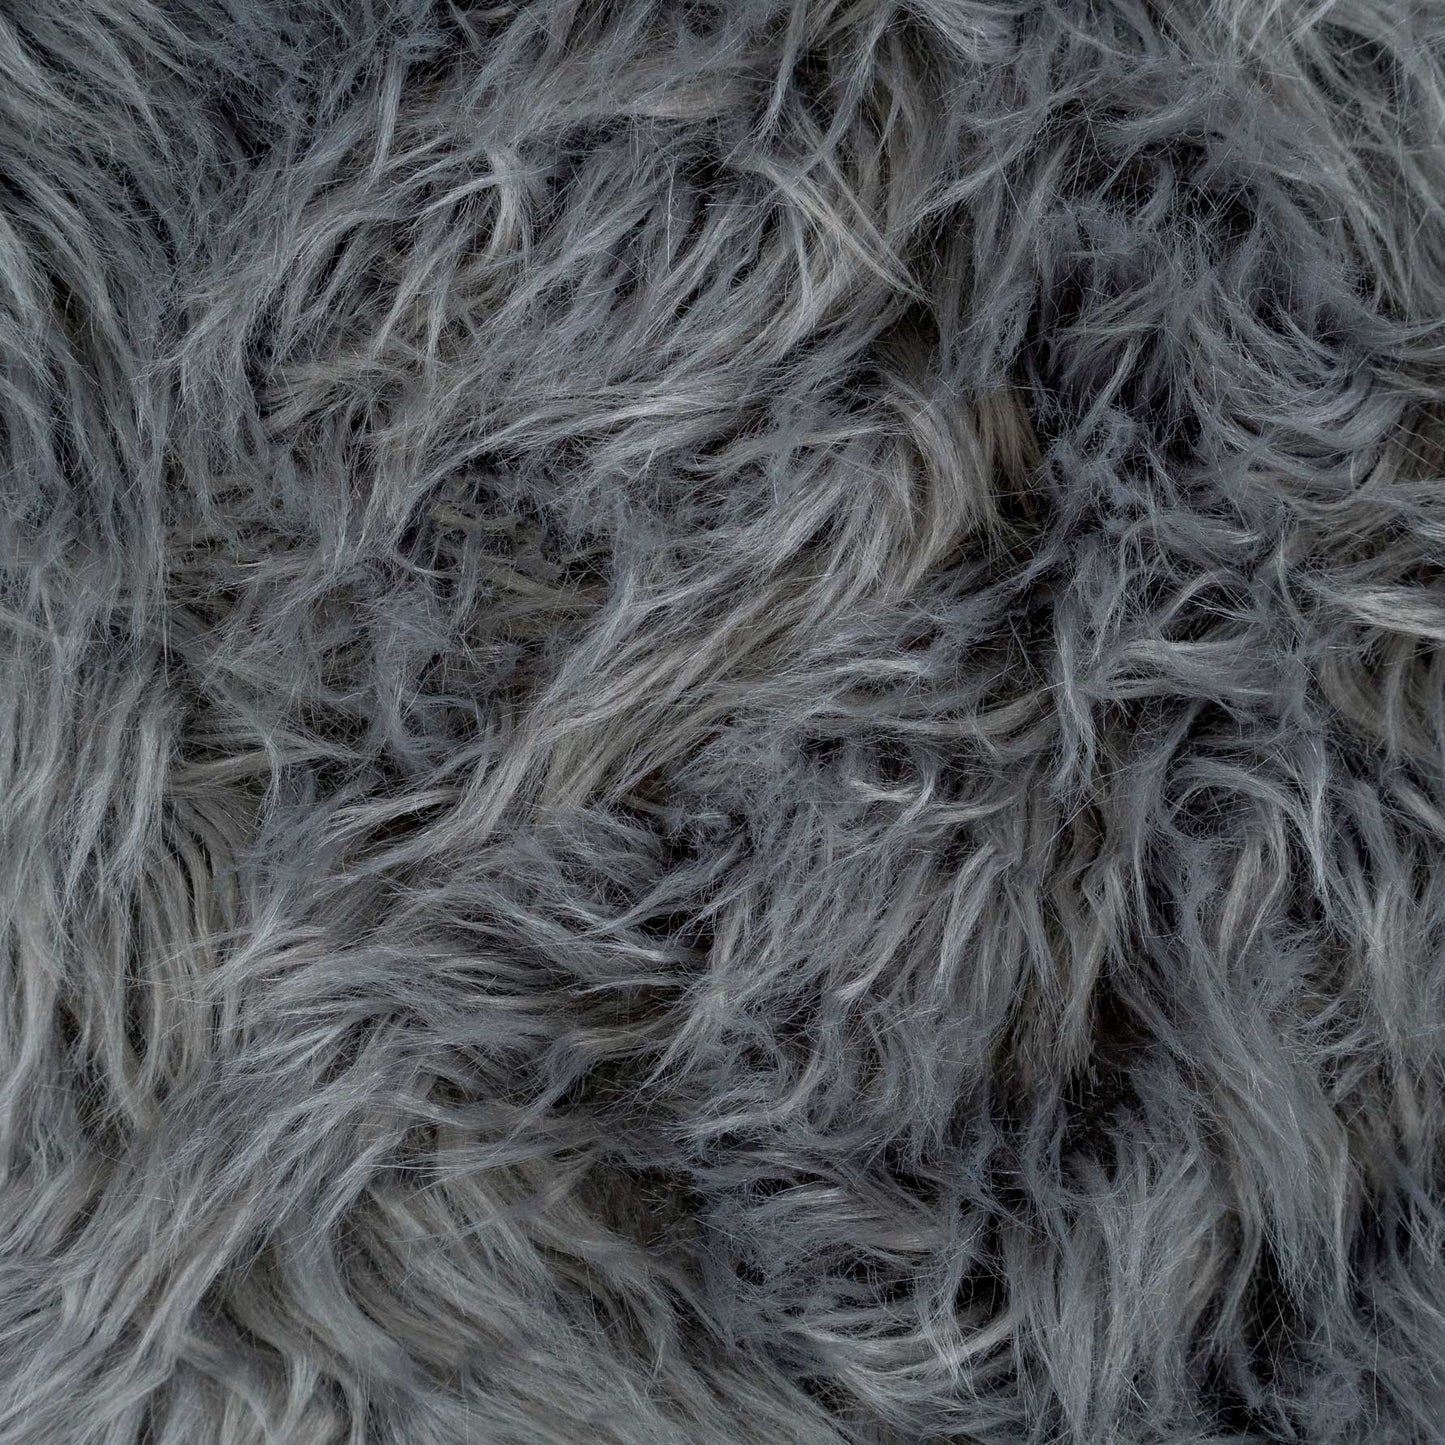 Dark Grey Faux Fur Sheepskin Rug